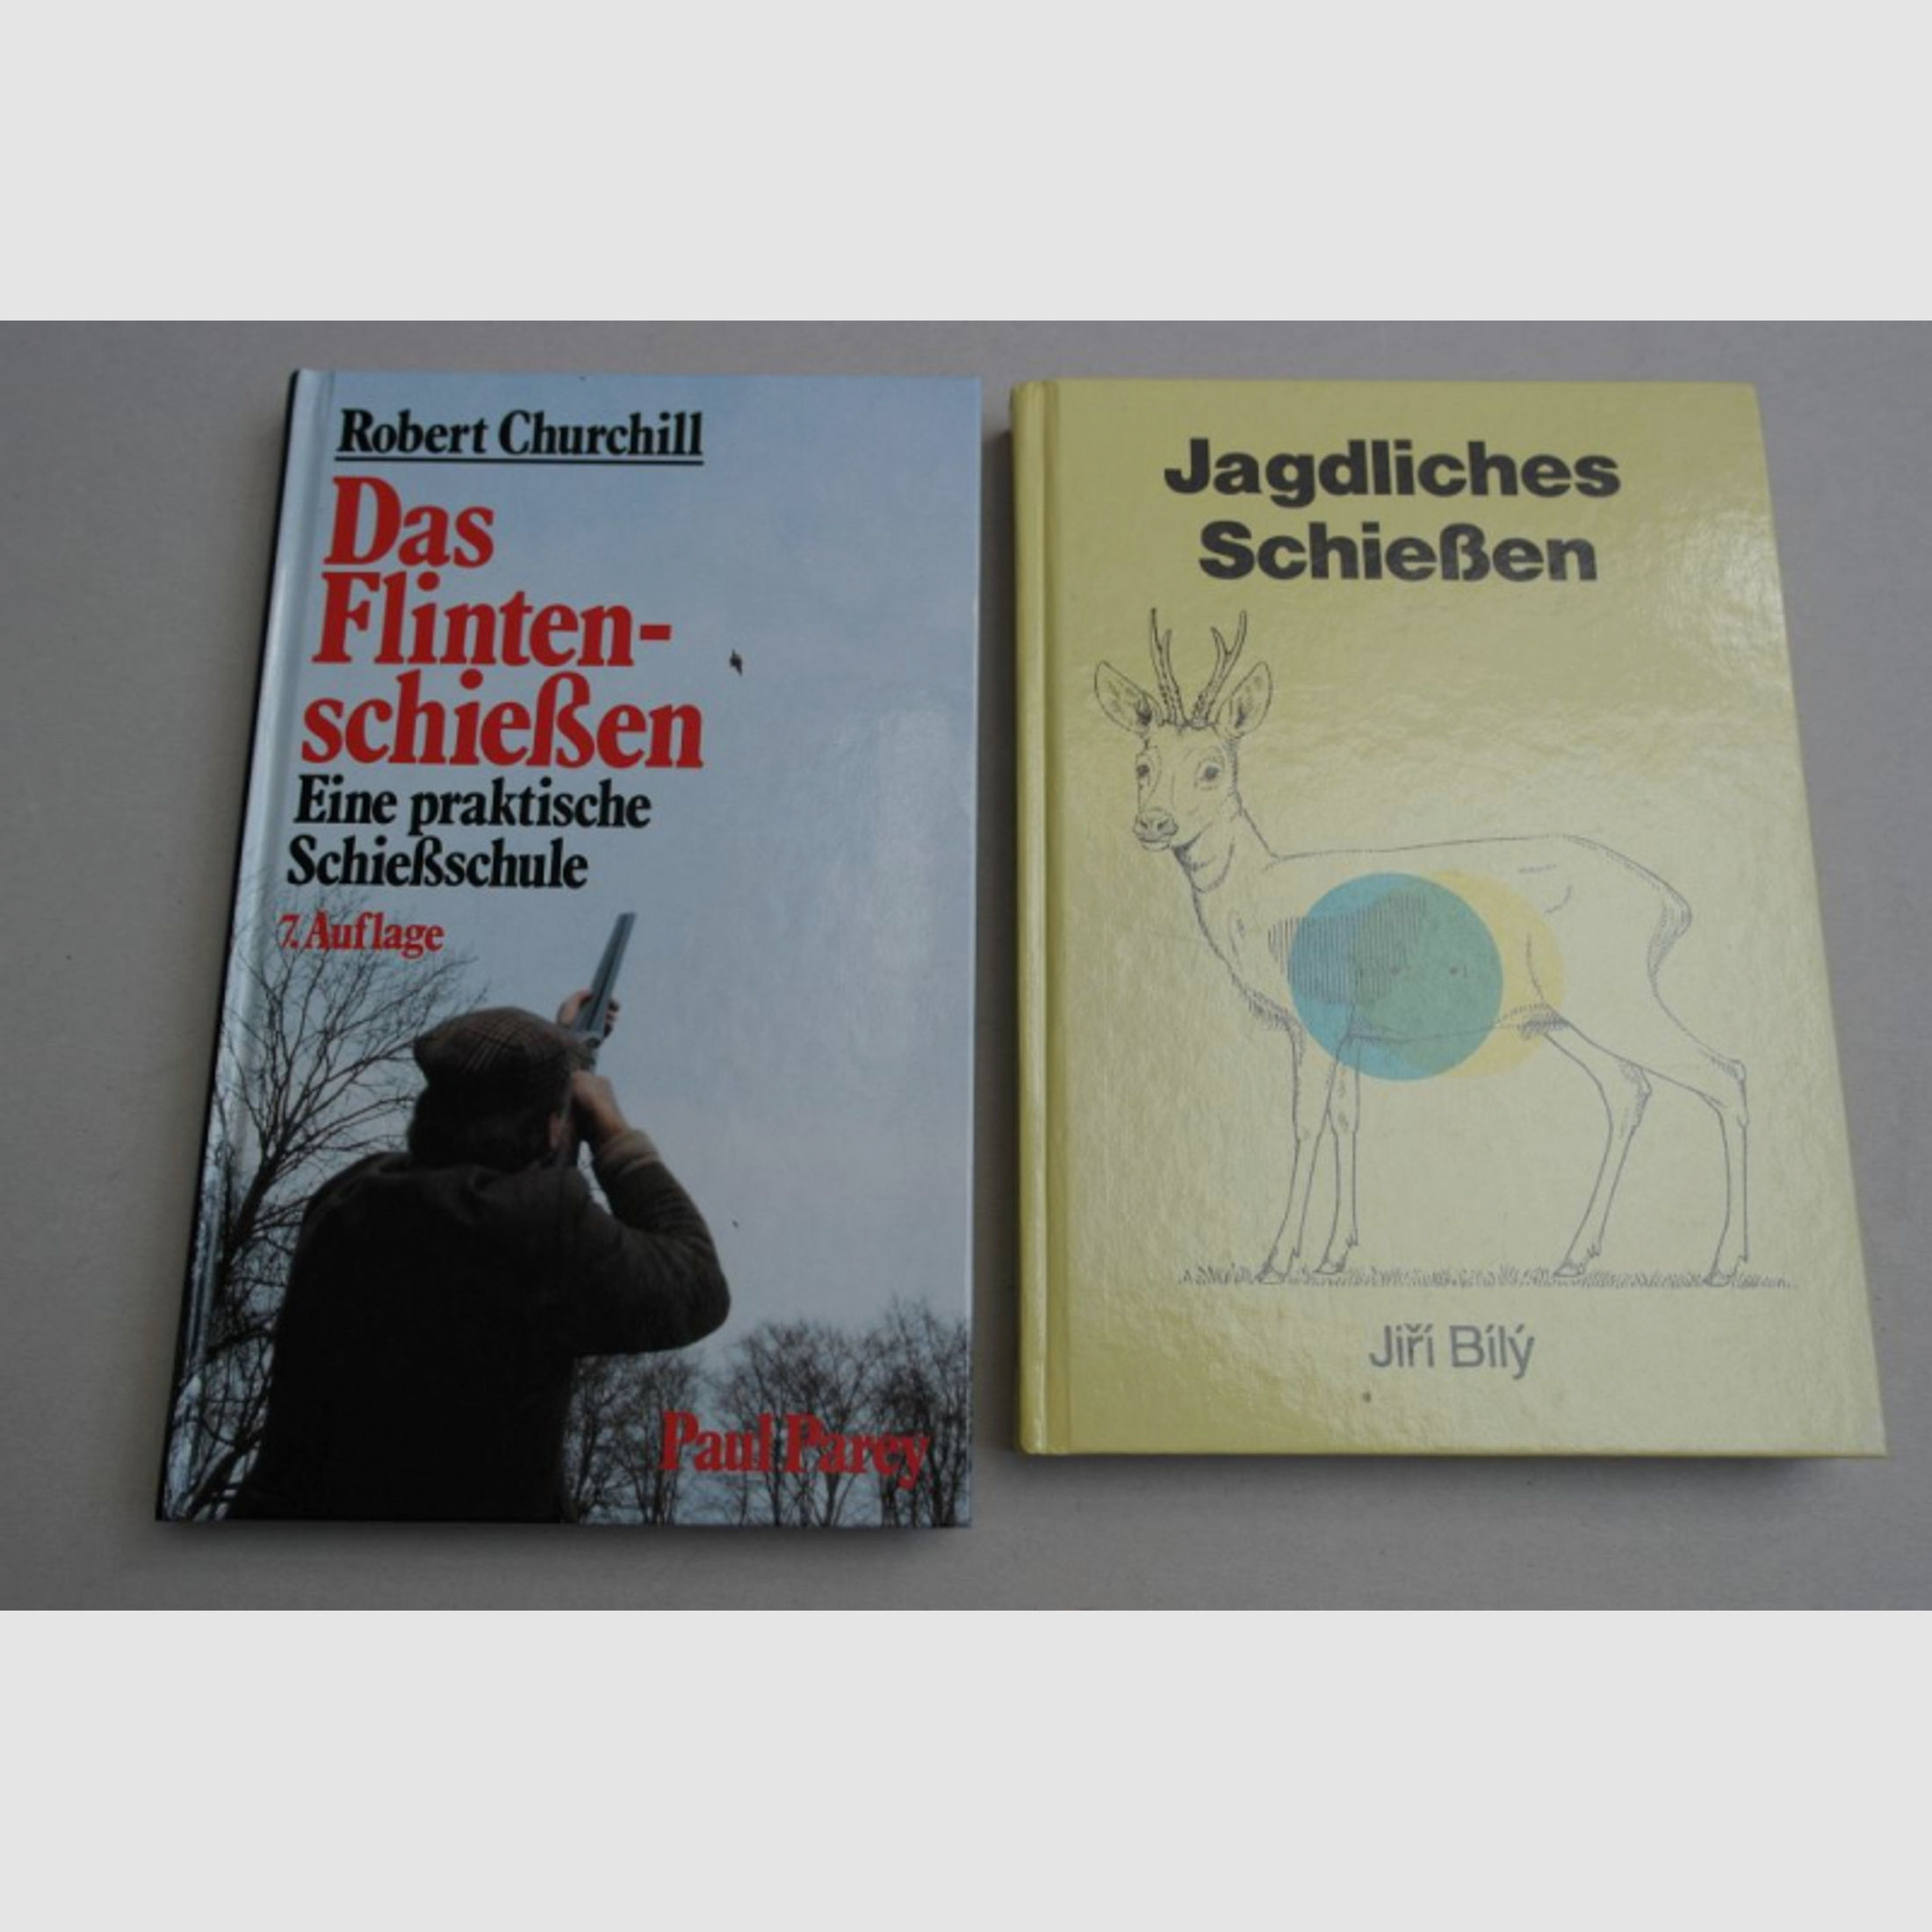 Bücher: "Das Flitenschießen" und "Jagdliches Schießen".